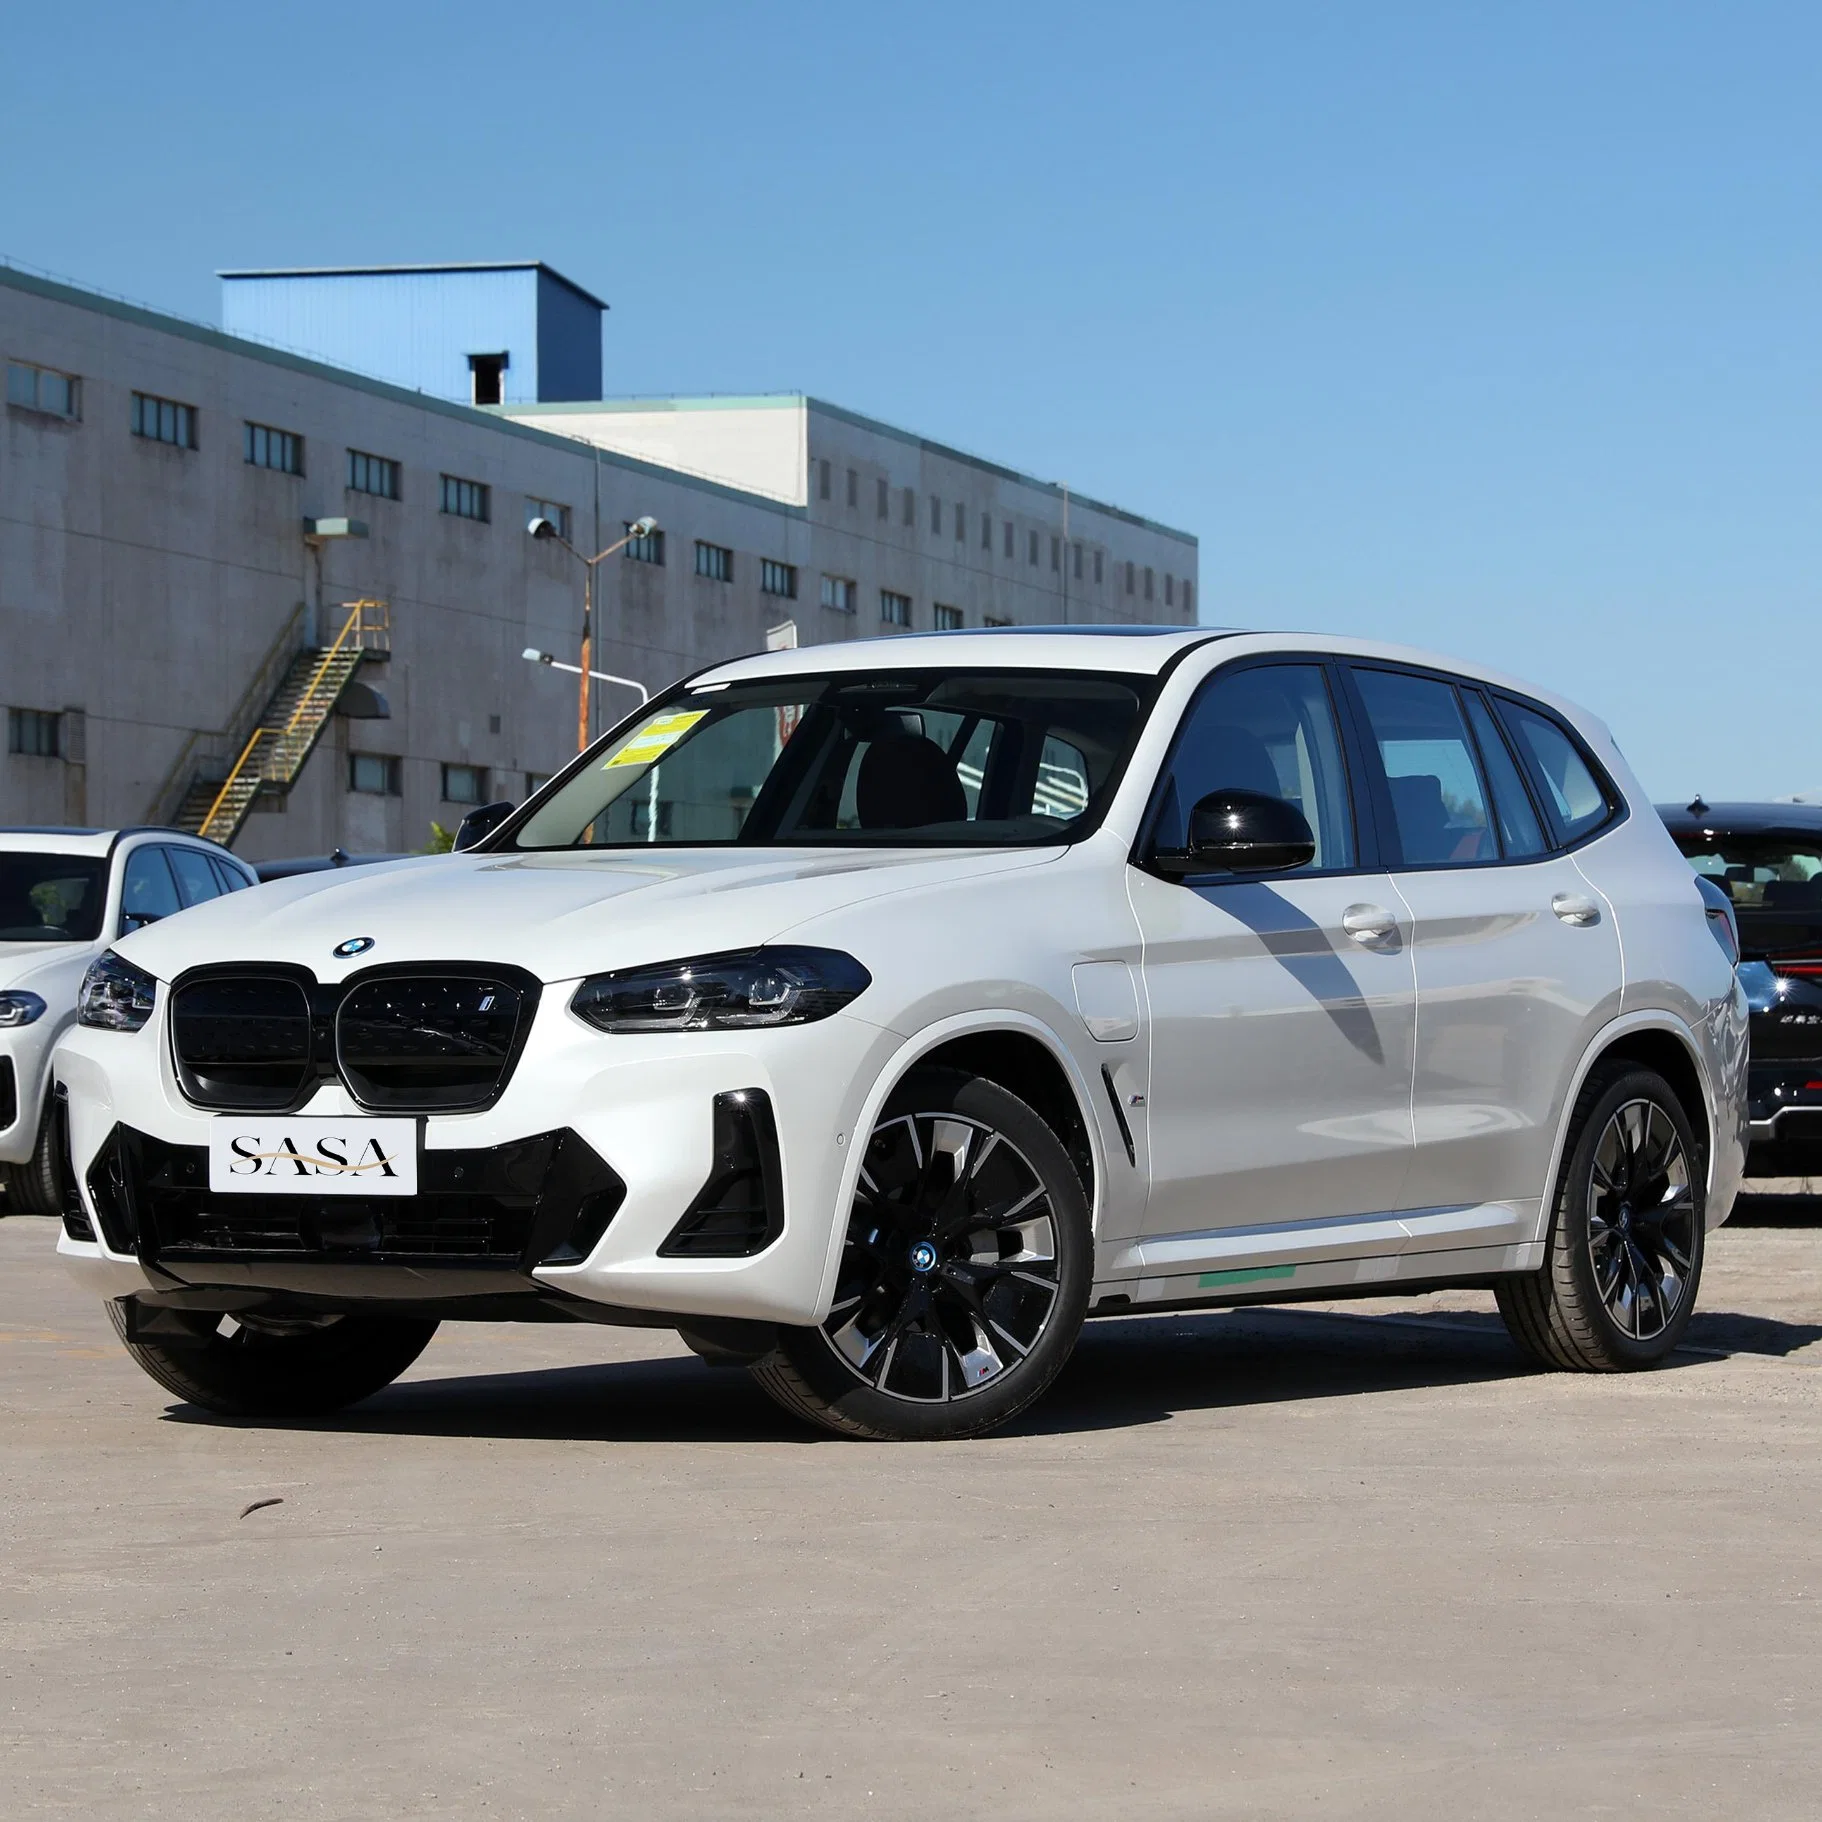 Coche usado BMW IX3 vehículos nuevos de la energía EV Nuevo eléctrico Coche Segunda mano inteligente cuatro ruedas de coches eléctricos chinos Venta